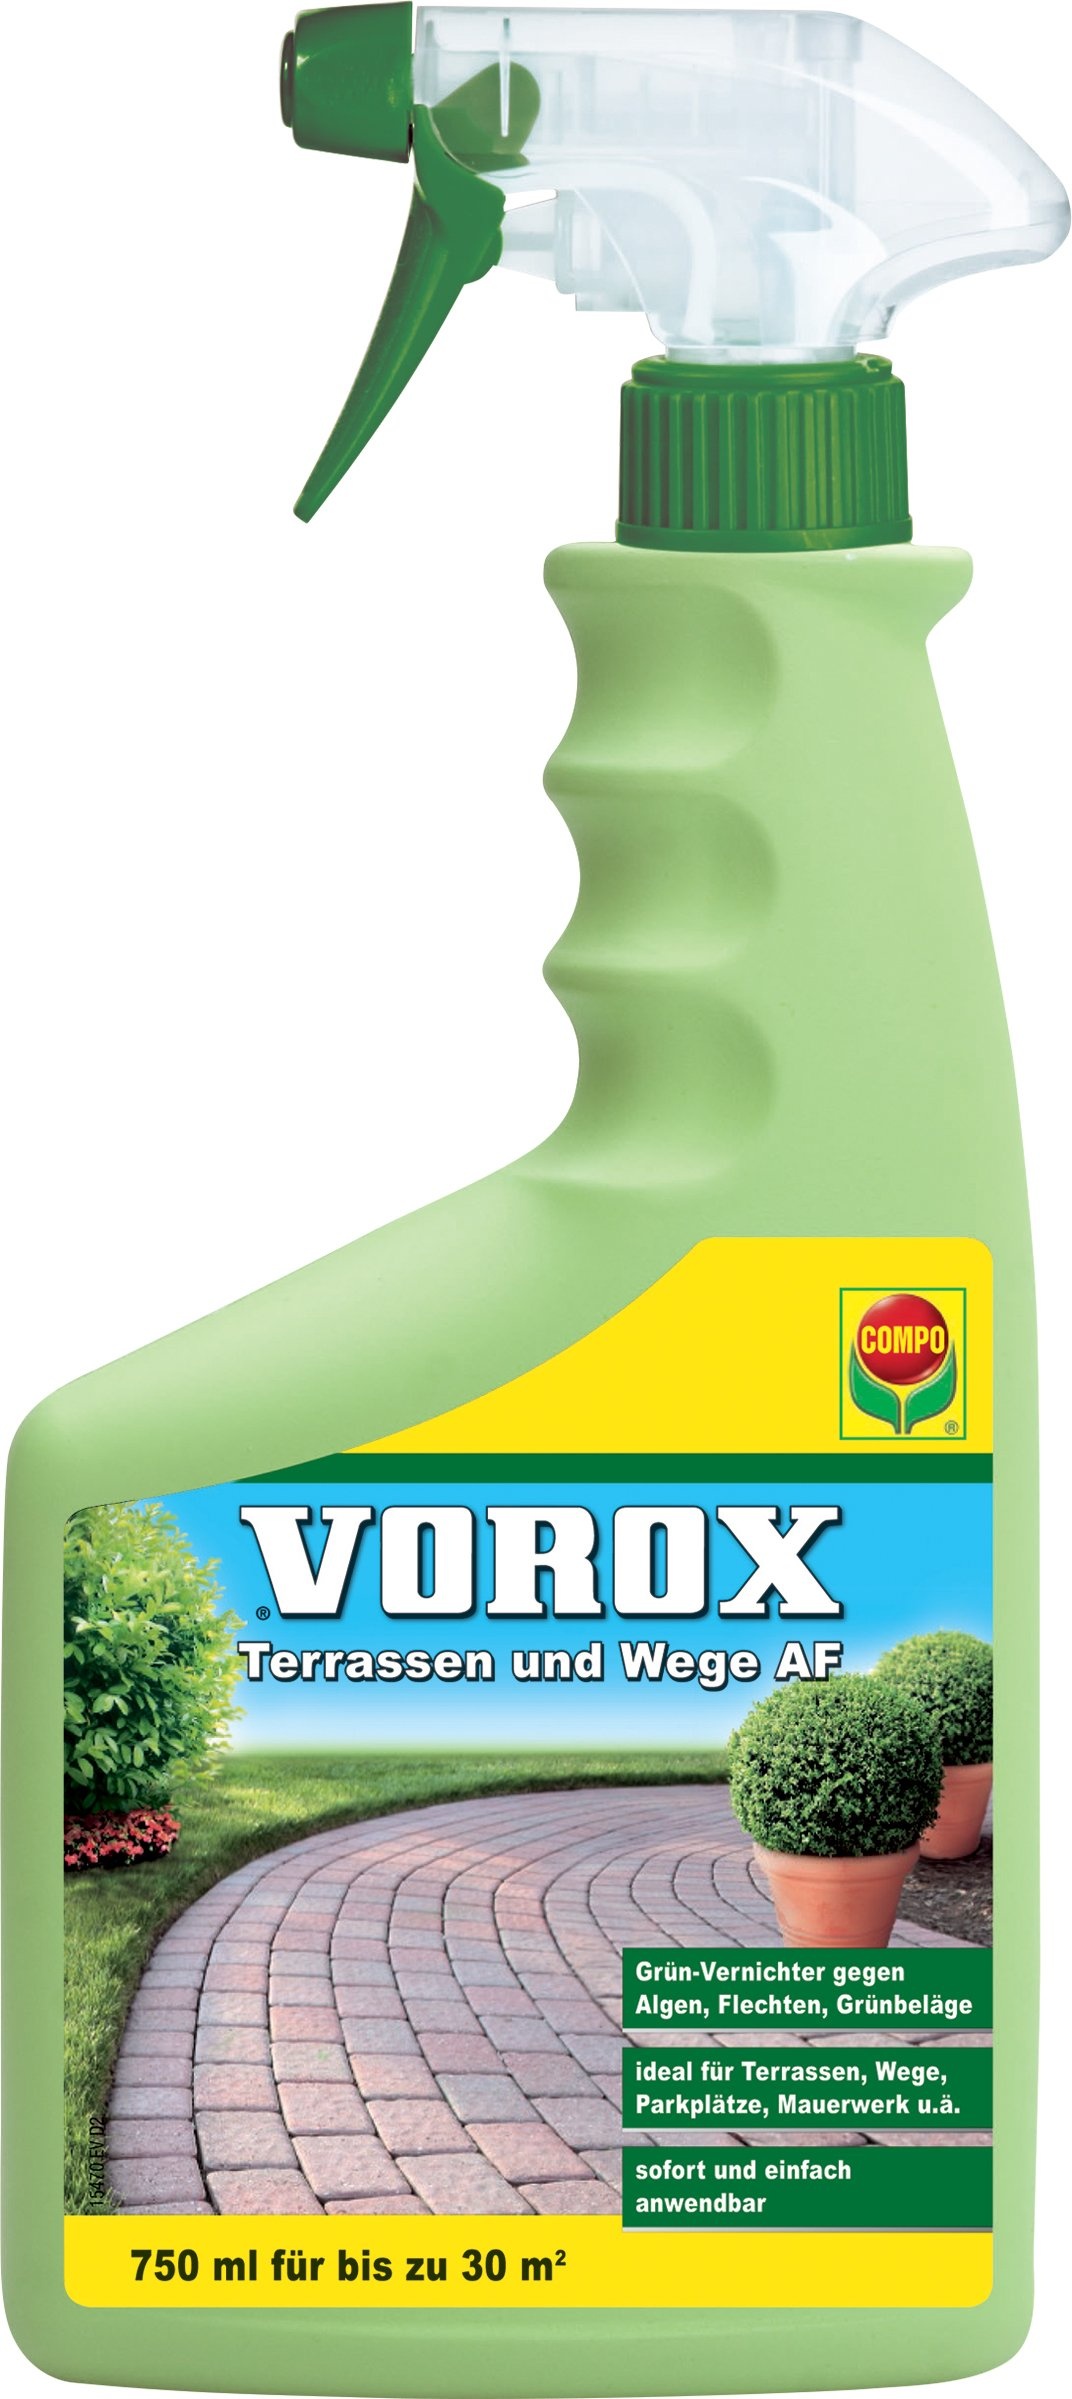 VOROX Terrassen und Wege AF, Grünvernichter, Anwendungsfertige Sprühflasche, 750 ml, 30 m2